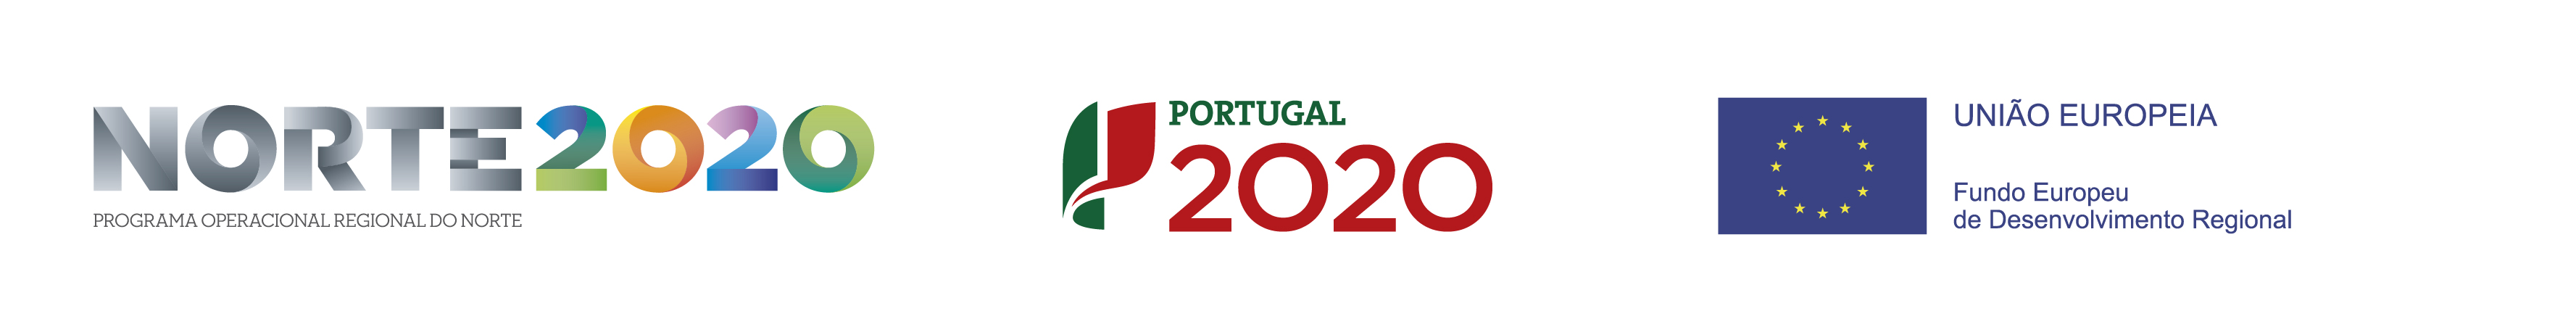 CENTRO 2020 | PORTUGAL 2020 | União Europeia